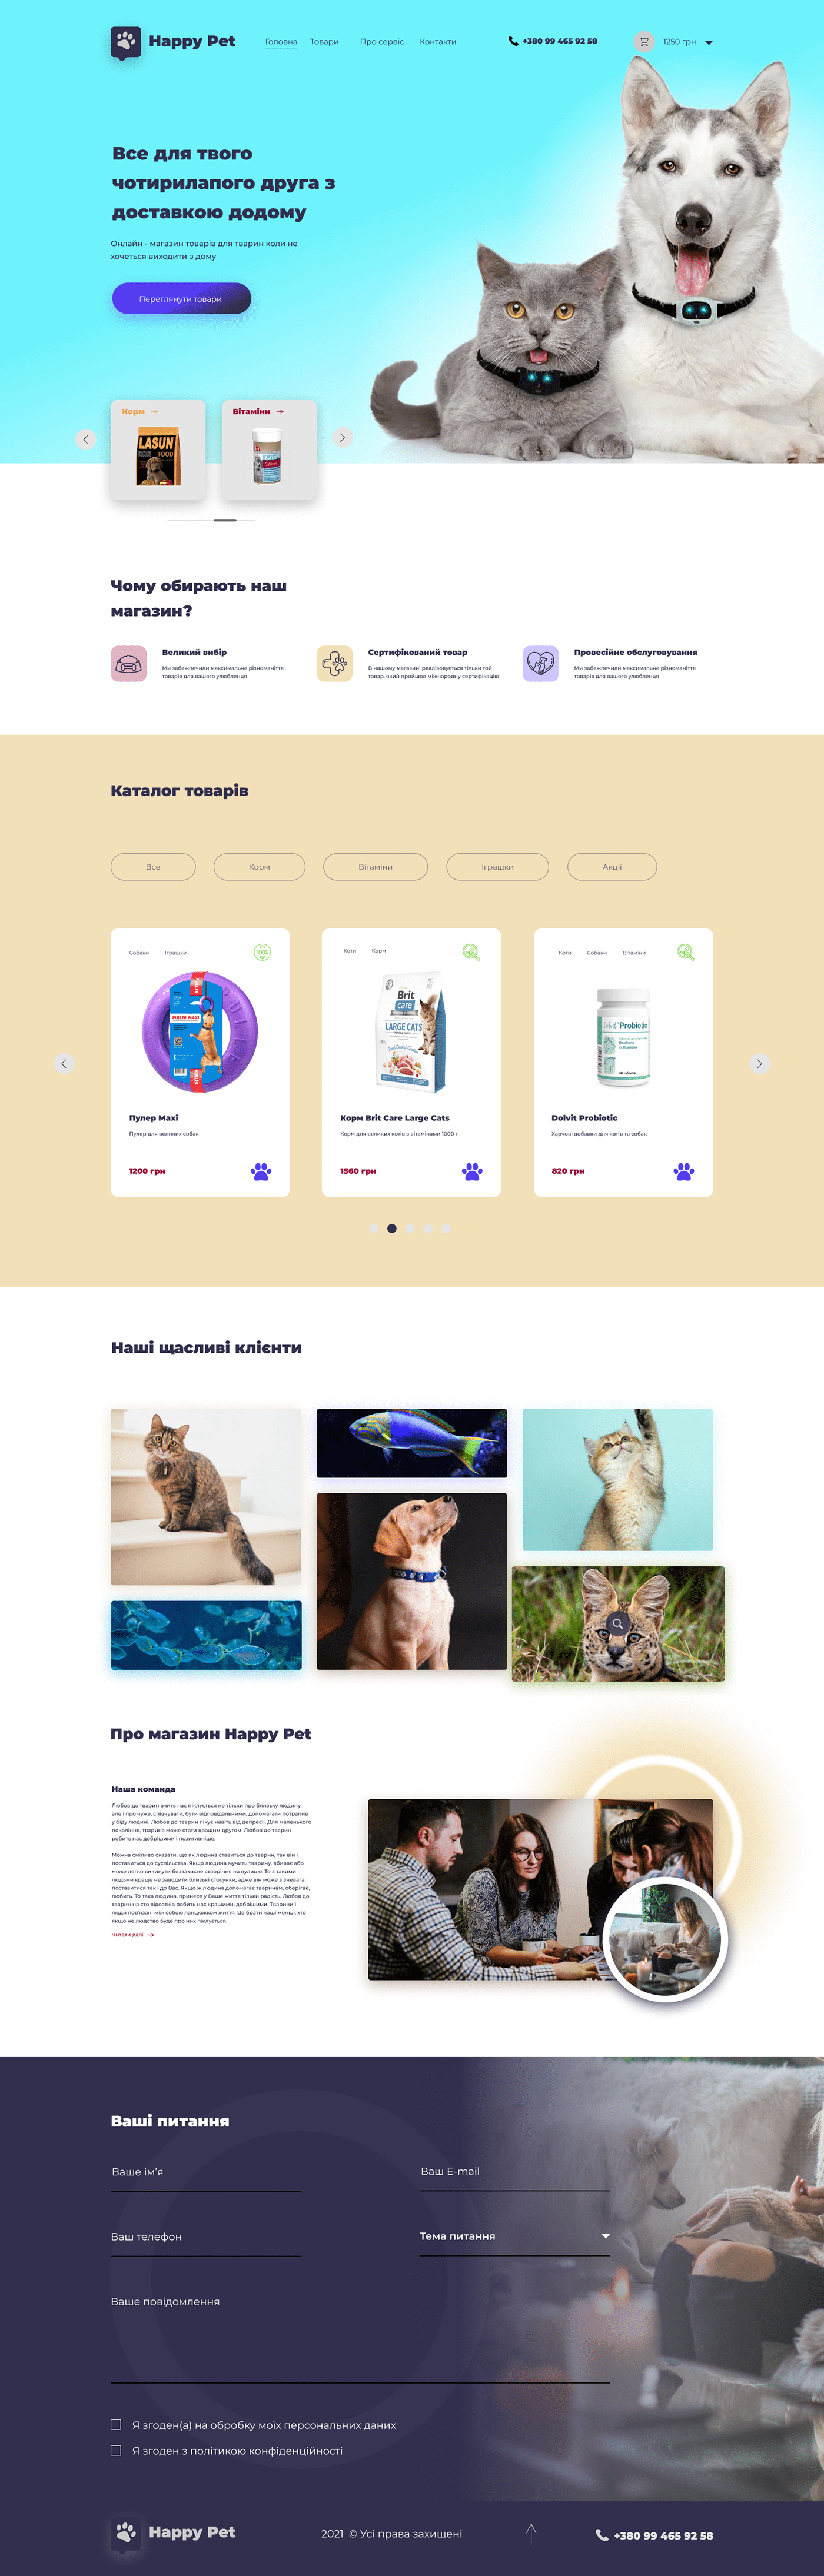 animal design Figma pet shop petshop UI/UX ukraine Web Design  Website Website Design